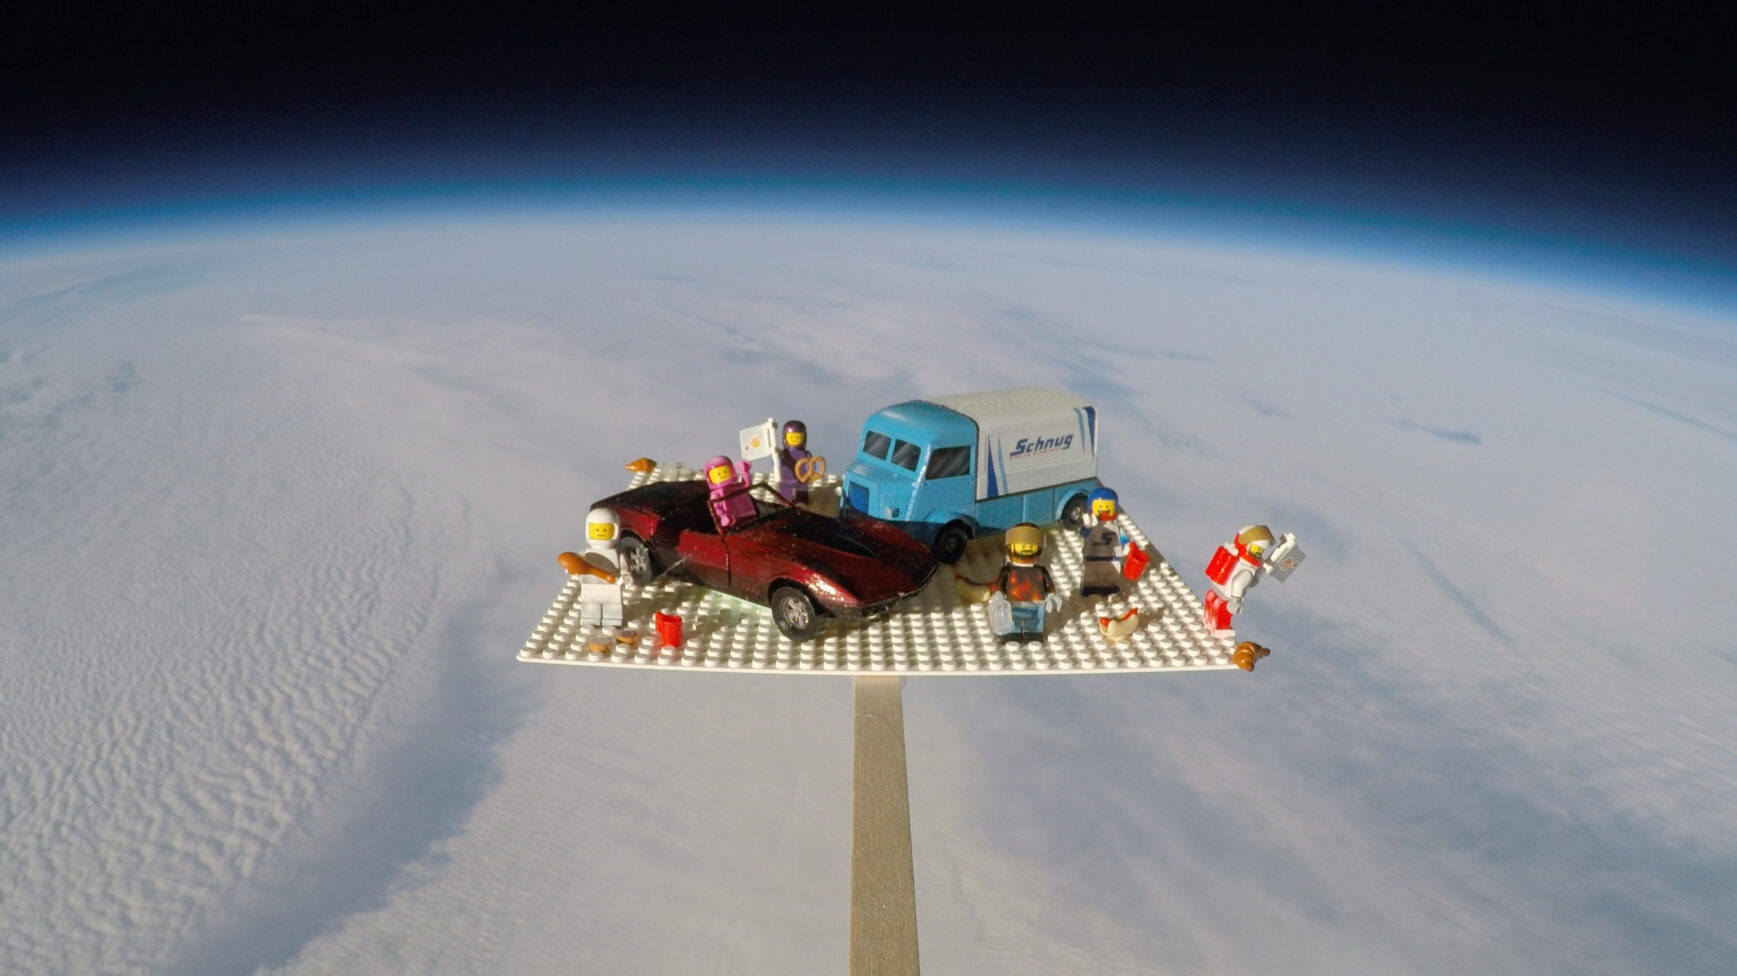 Śniadanie & Gablota w stratosferze